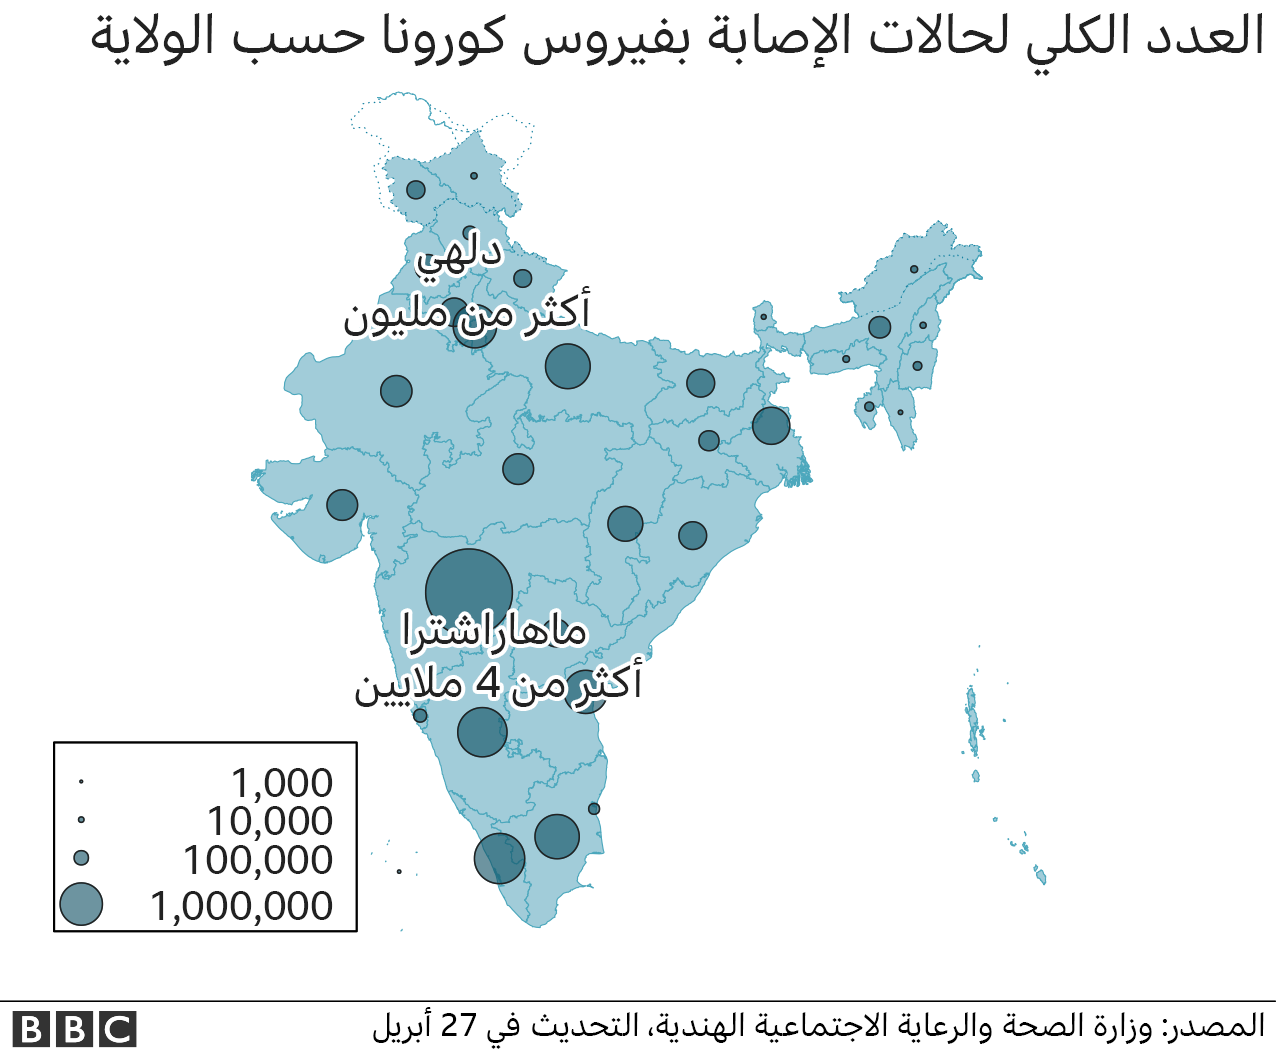 خريطة لأرقام الحالات في الهند تظهر الولايات الانتخابية